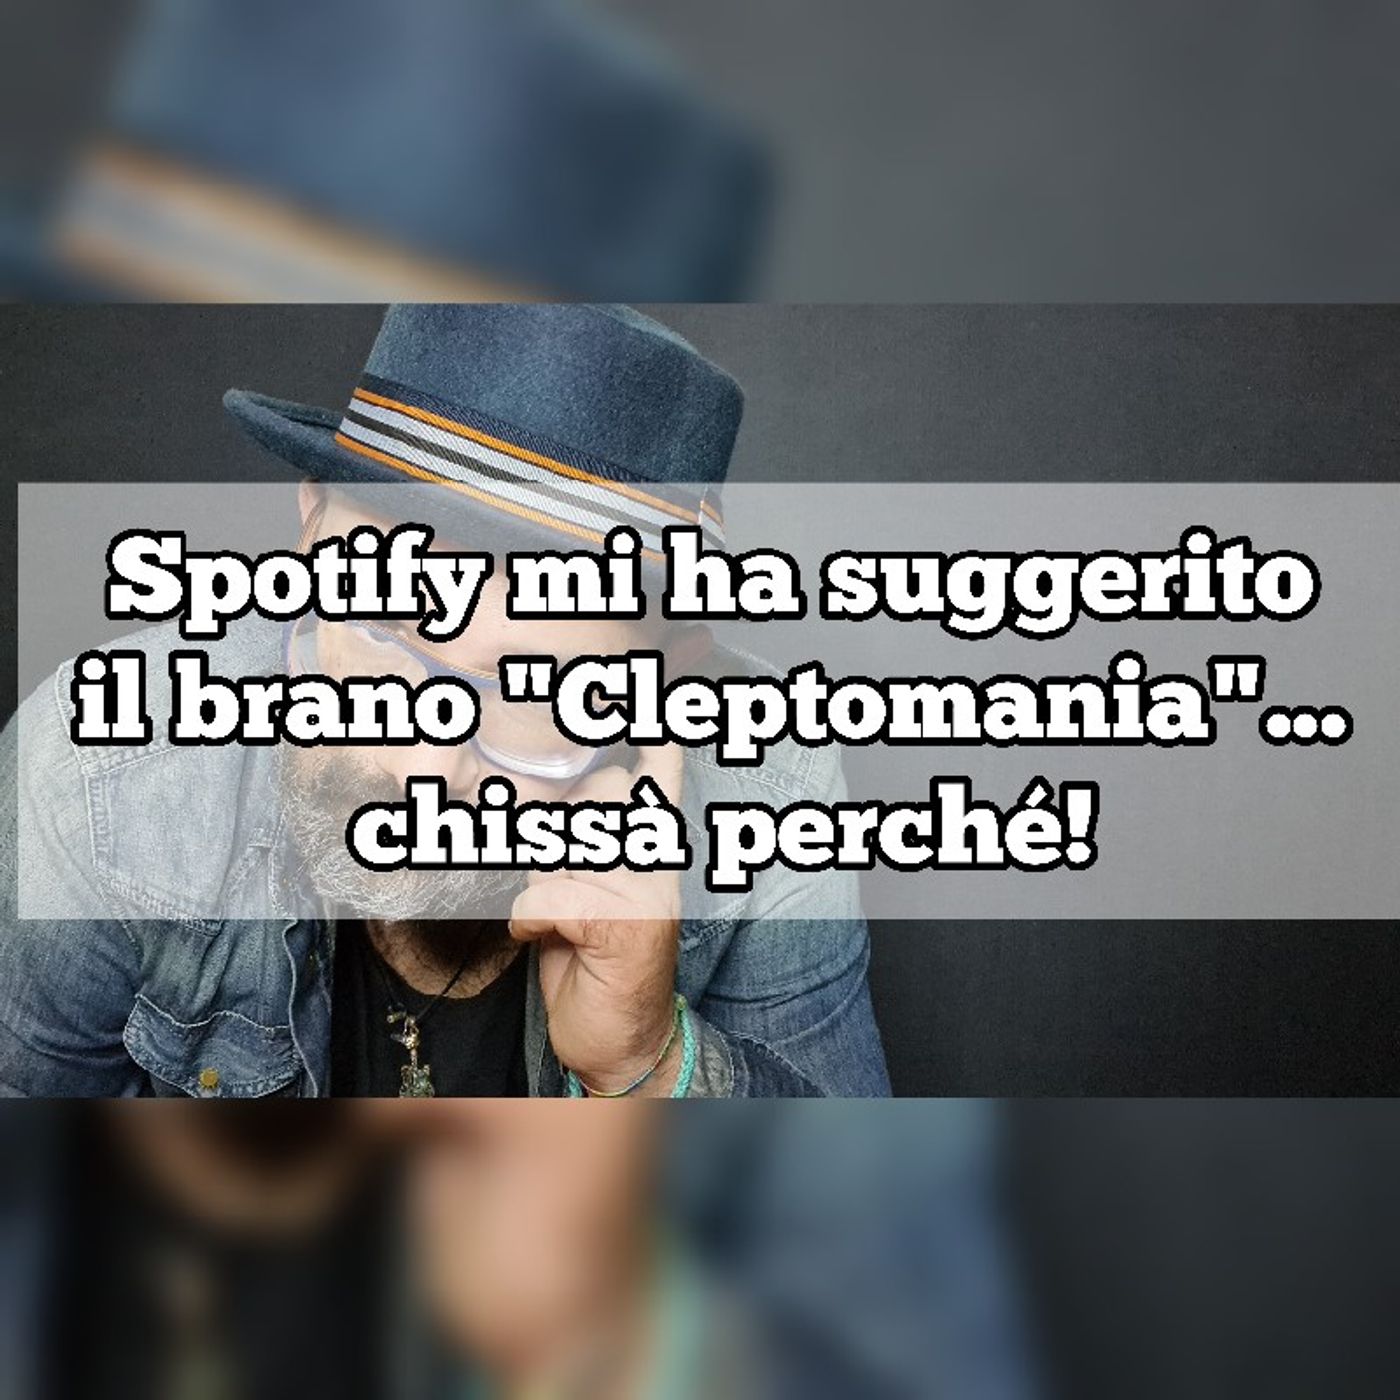 Episodio 1224 - Spotify mi ha suggerito il brano "Cleptomania" chissà perché!